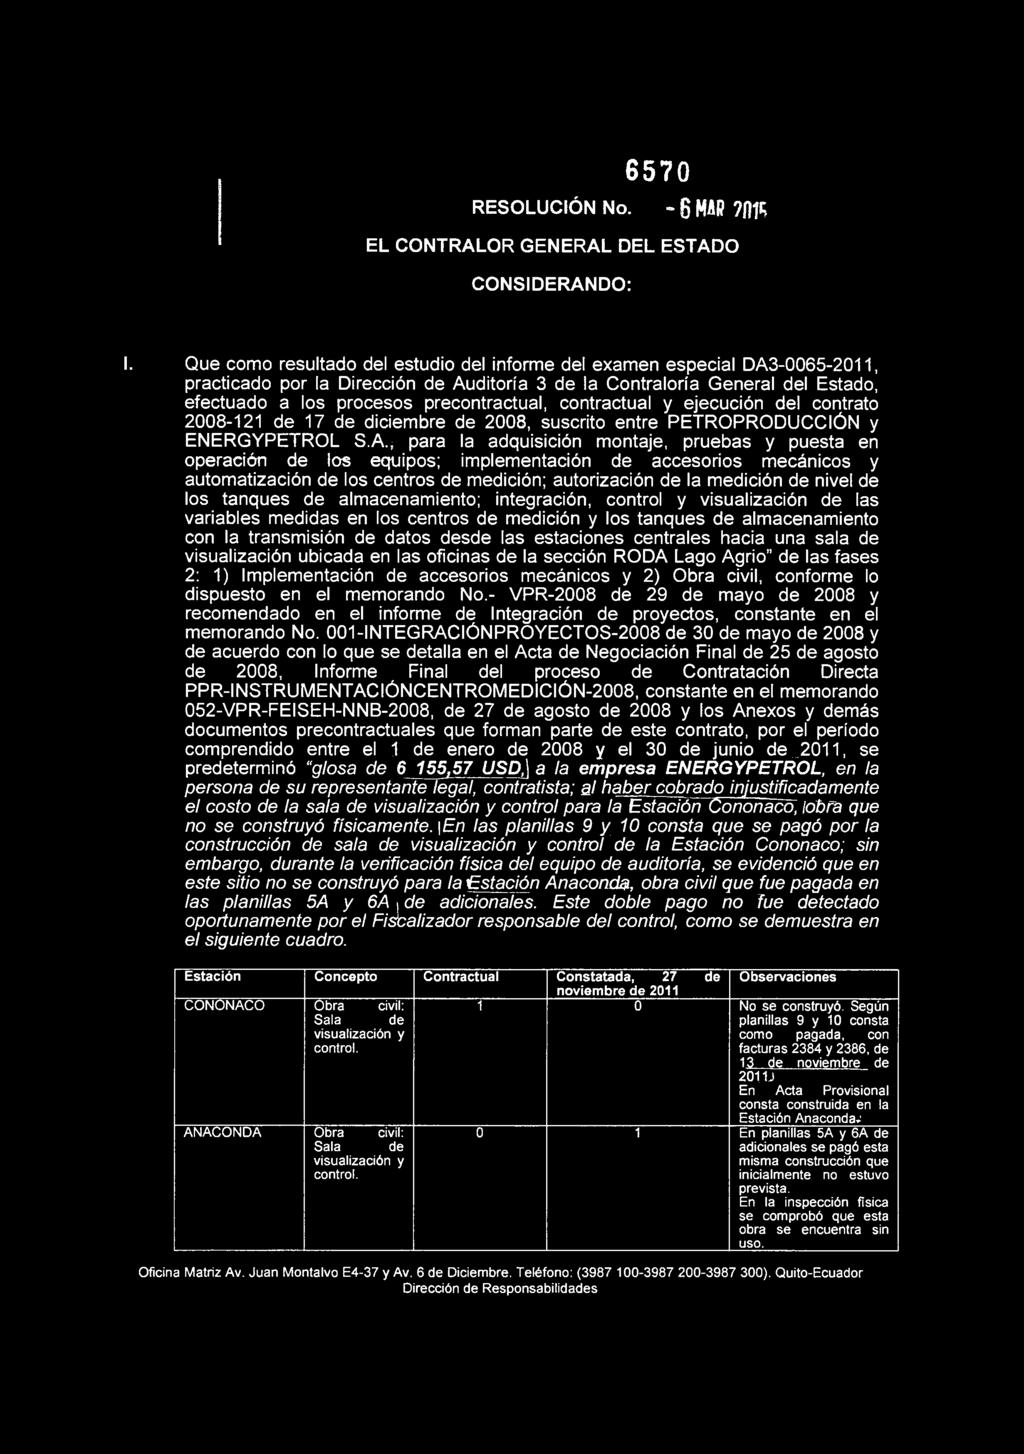 contractual y ejecución del contrato 2008-121 de 17 de diciembre de 2008, suscrito entre PETROPRODUCCIÓN y ENERGYPETROL S A * para la adquisición montaje, pruebas y puesta en operación de los